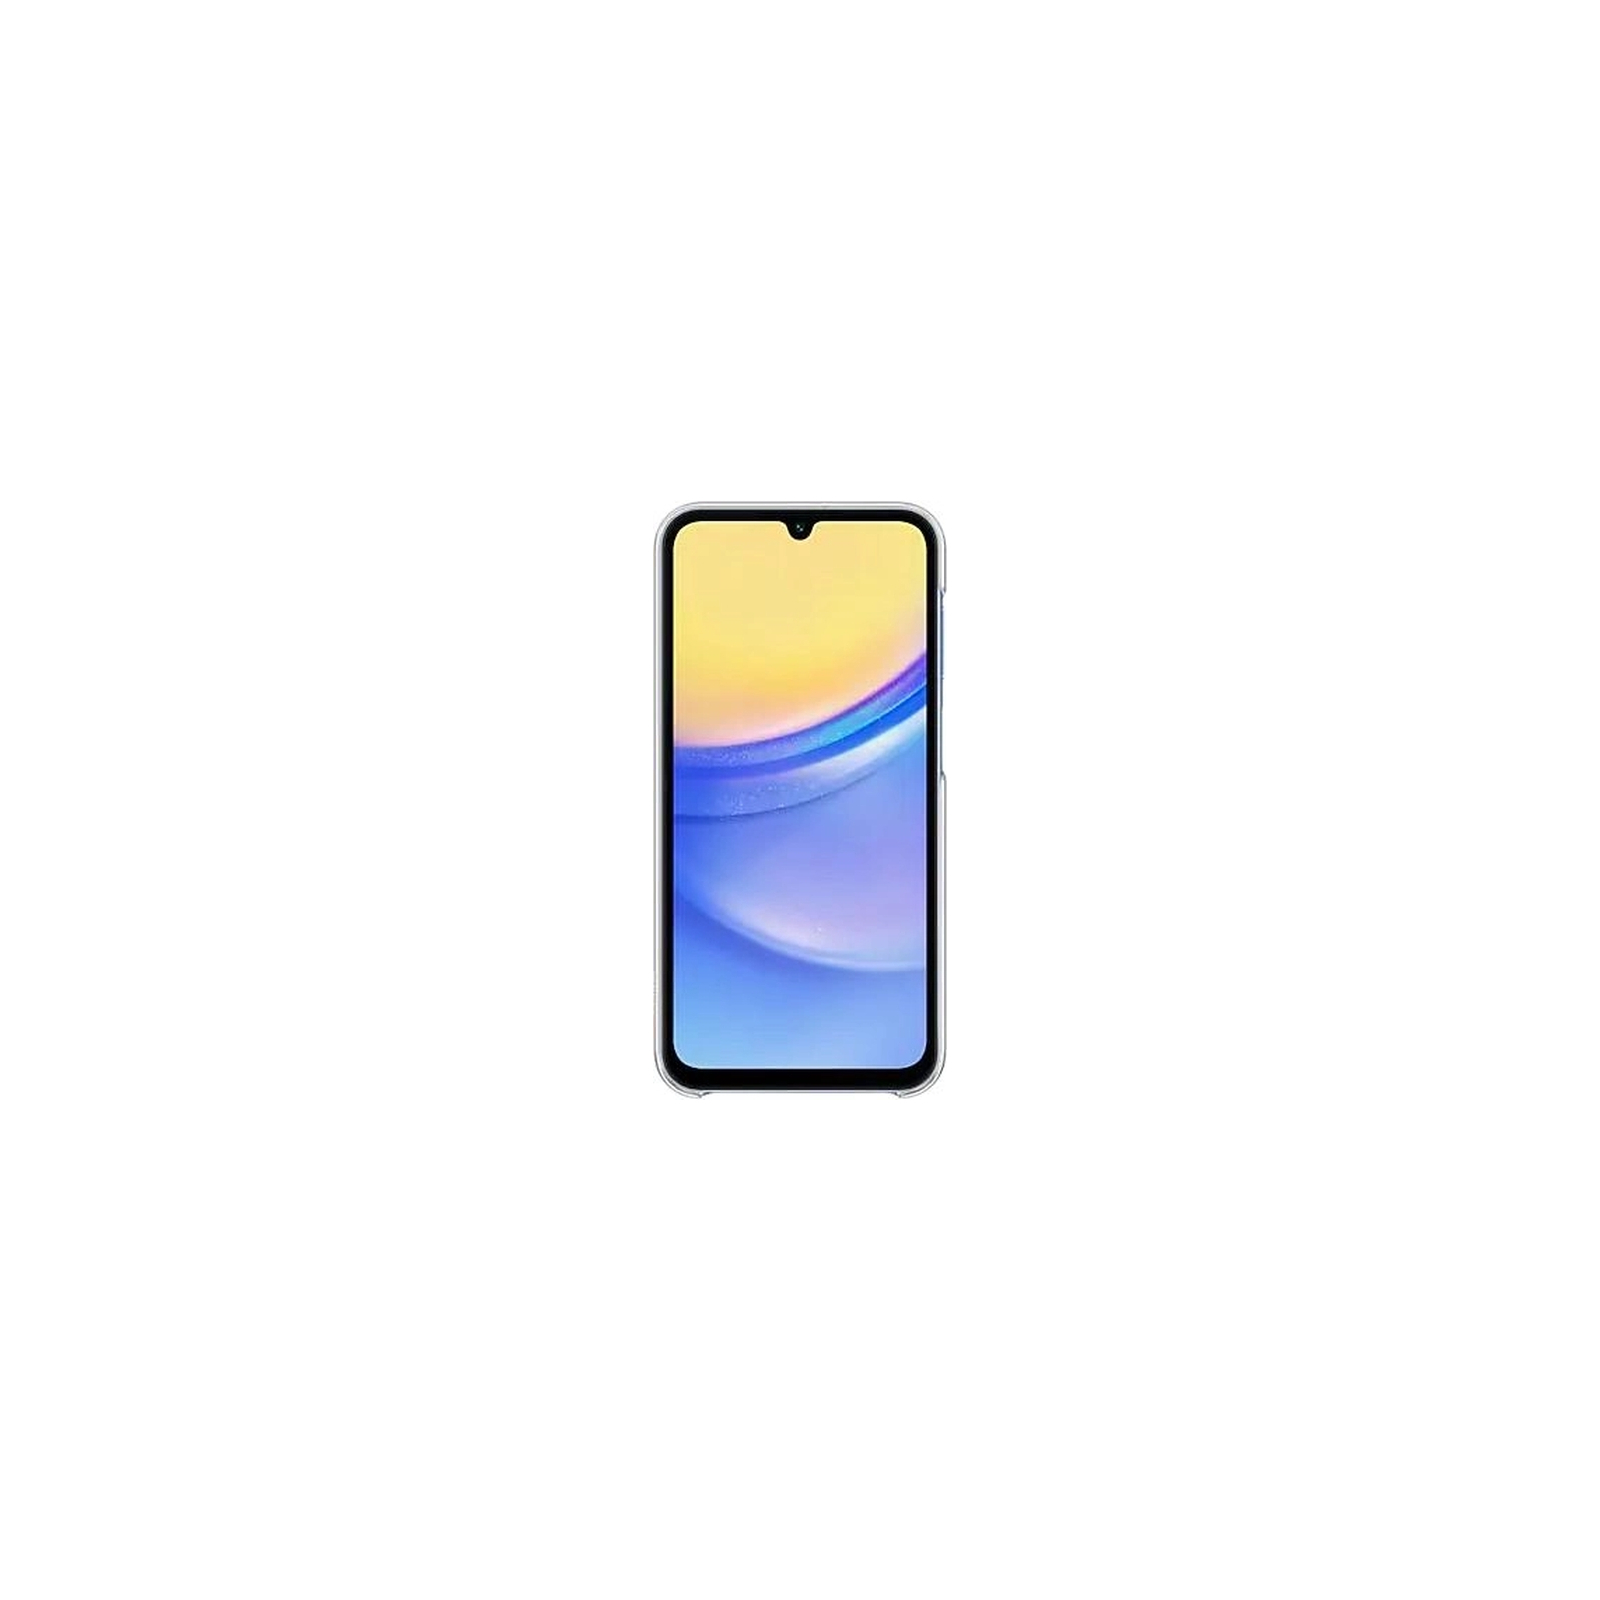 Чехол для мобильного телефона Samsung A15 5G Clear Case (EF-QA156CTEGWW) изображение 4